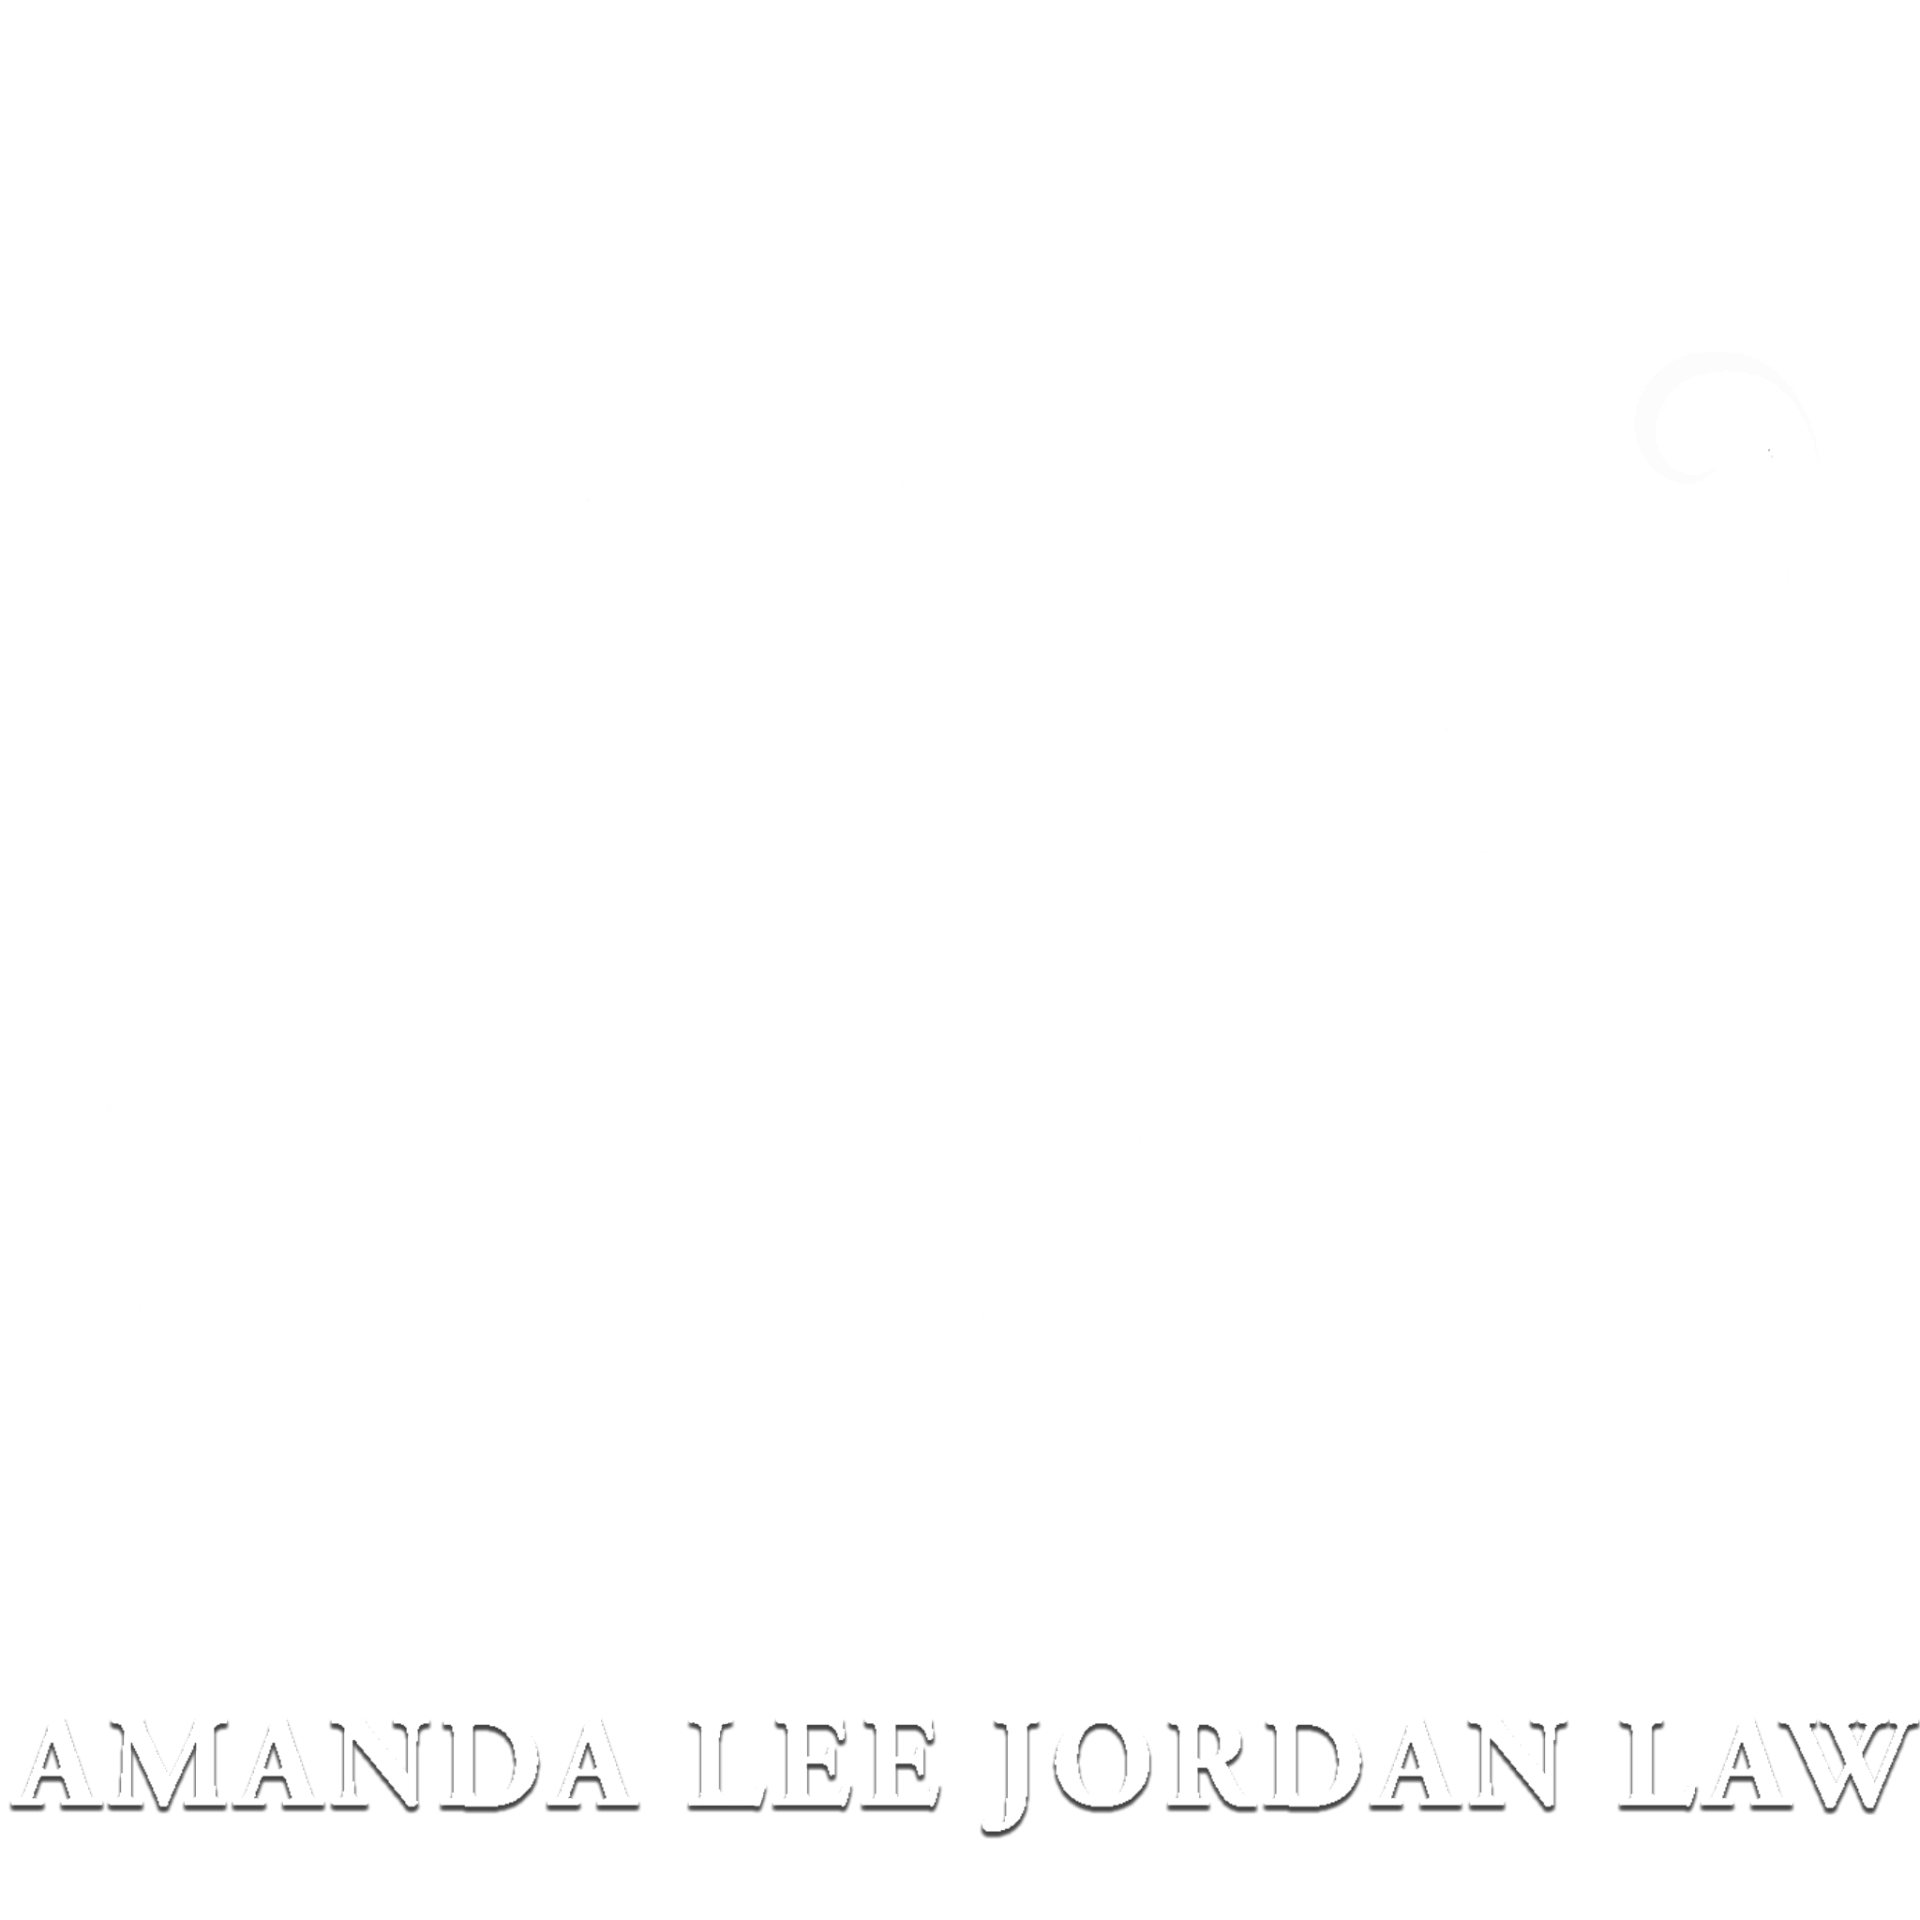 Amanda Lee Jordan Law